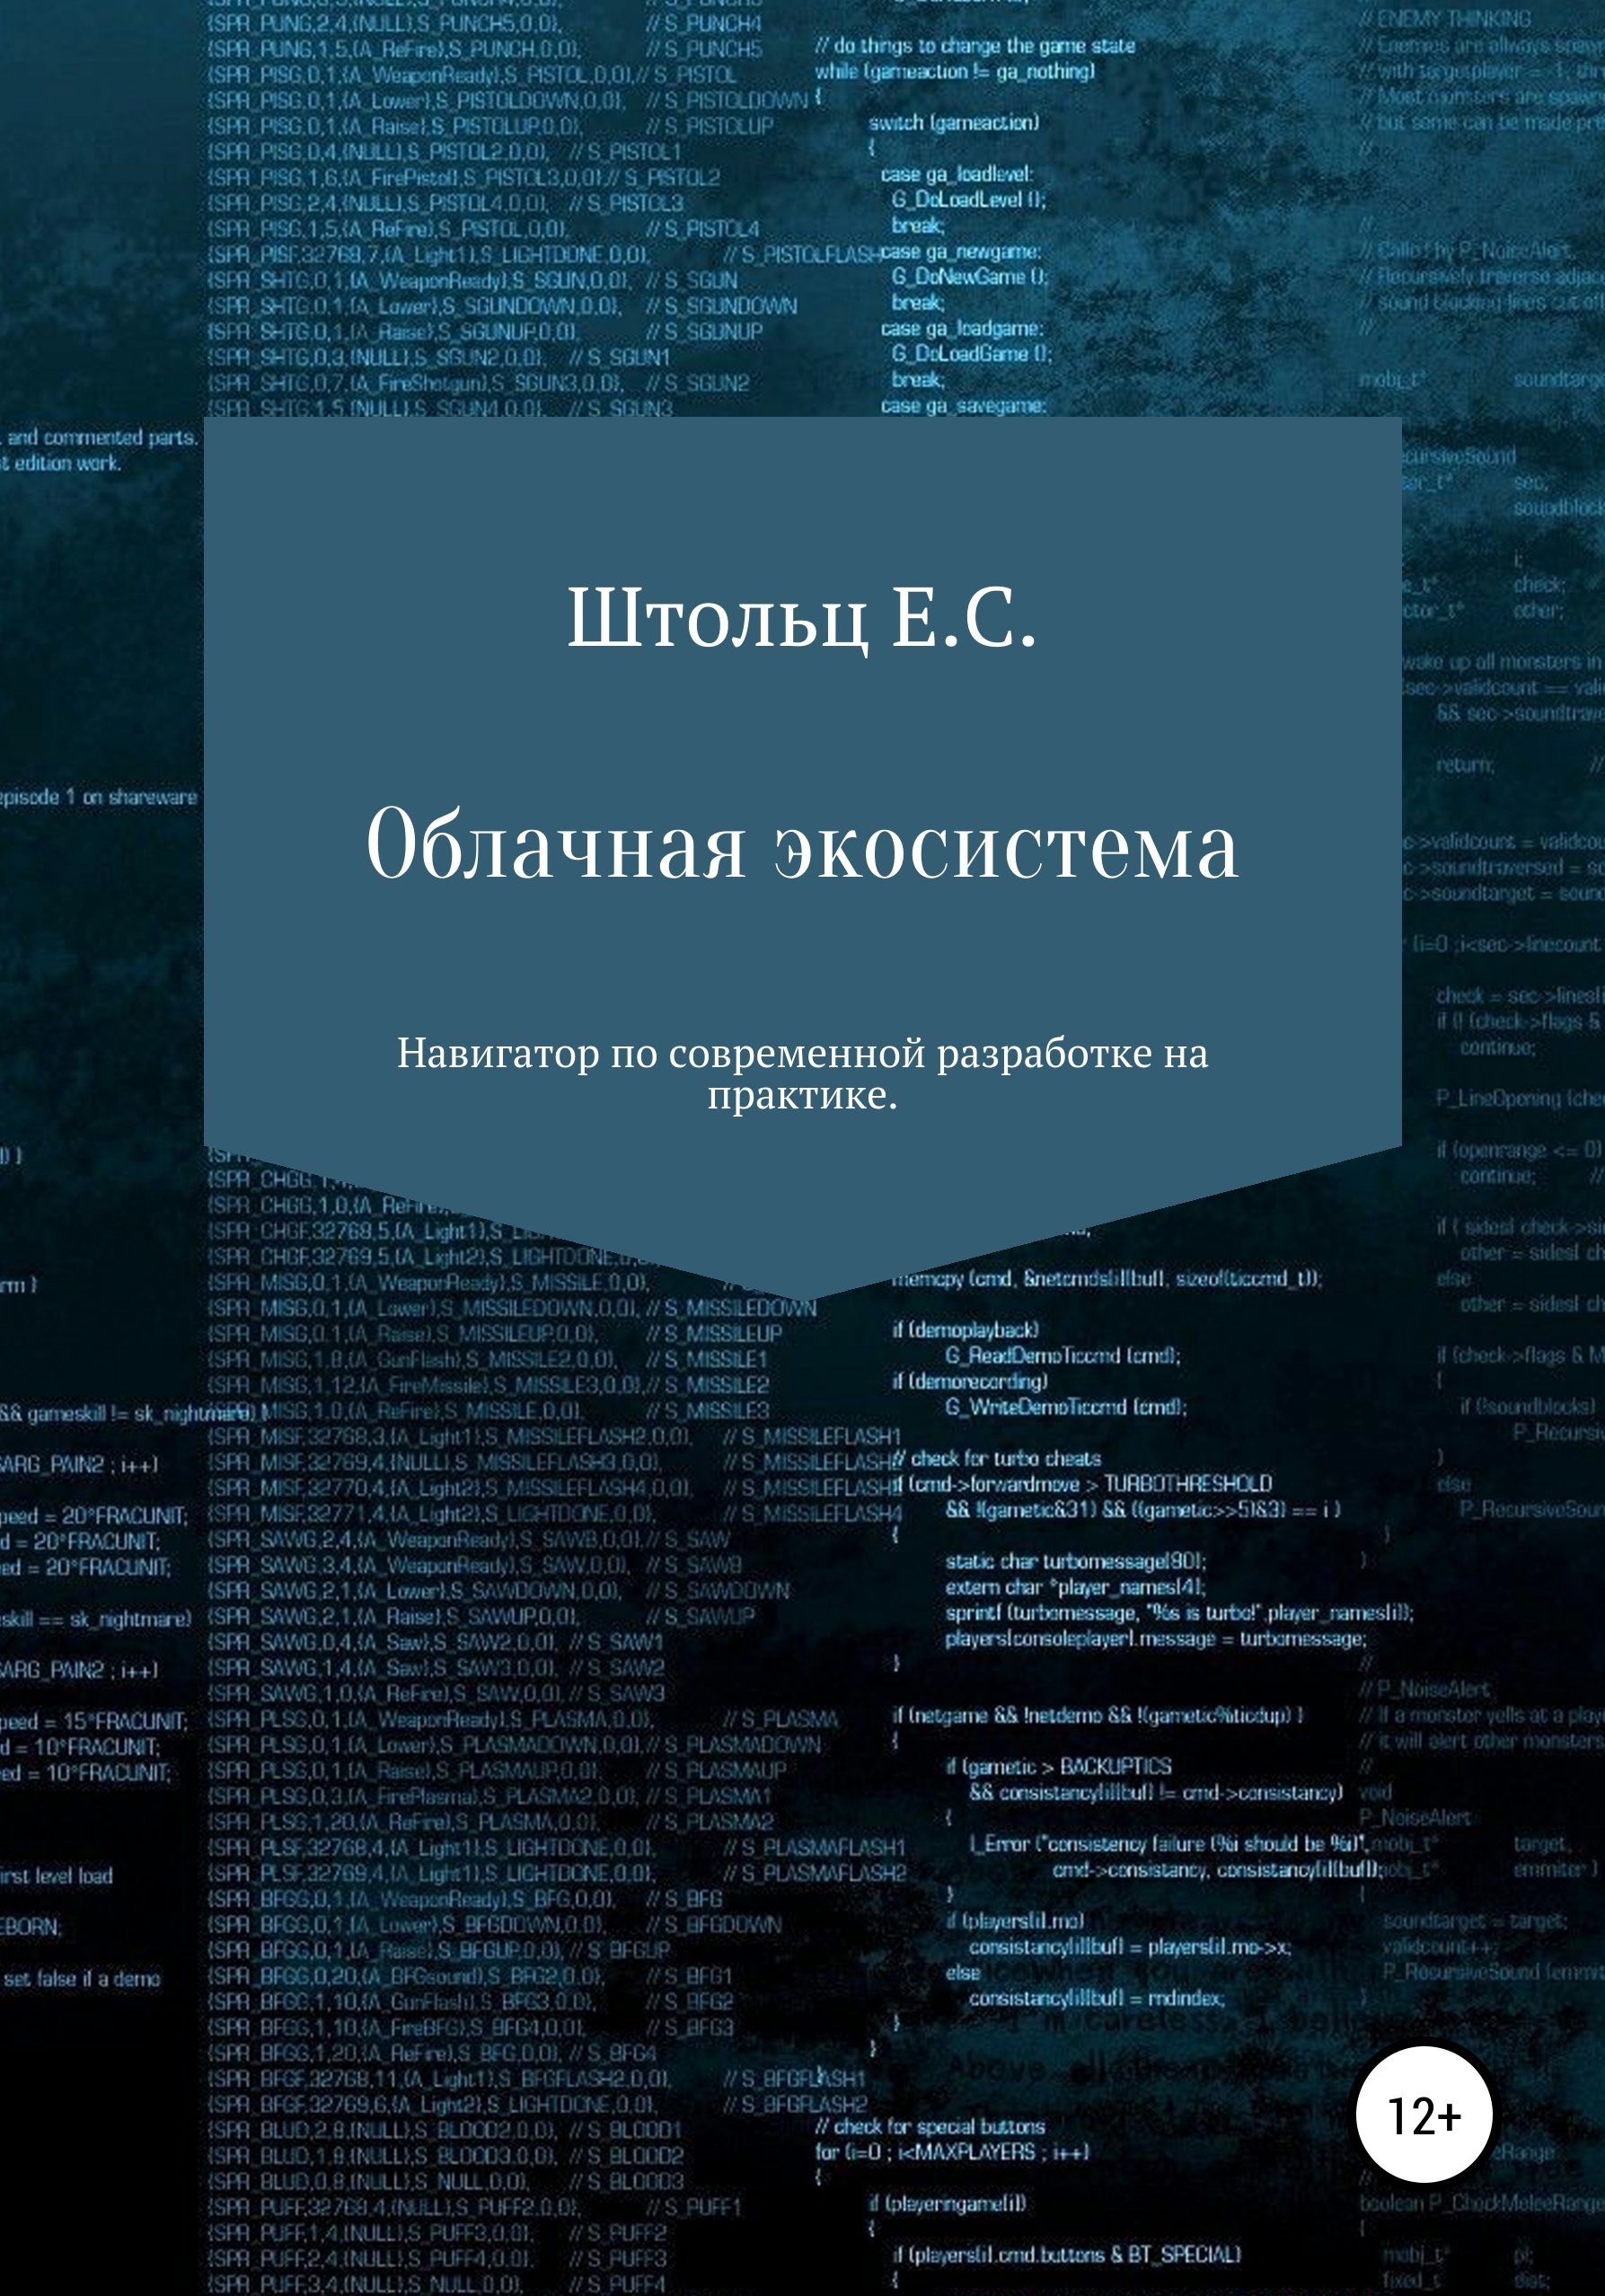 Книга  Облачная экосистема созданная Евгений Сергеевич Штольц может относится к жанру базы данных, интернет, программирование. Стоимость электронной книги Облачная экосистема с идентификатором 56435430 составляет 399.00 руб.